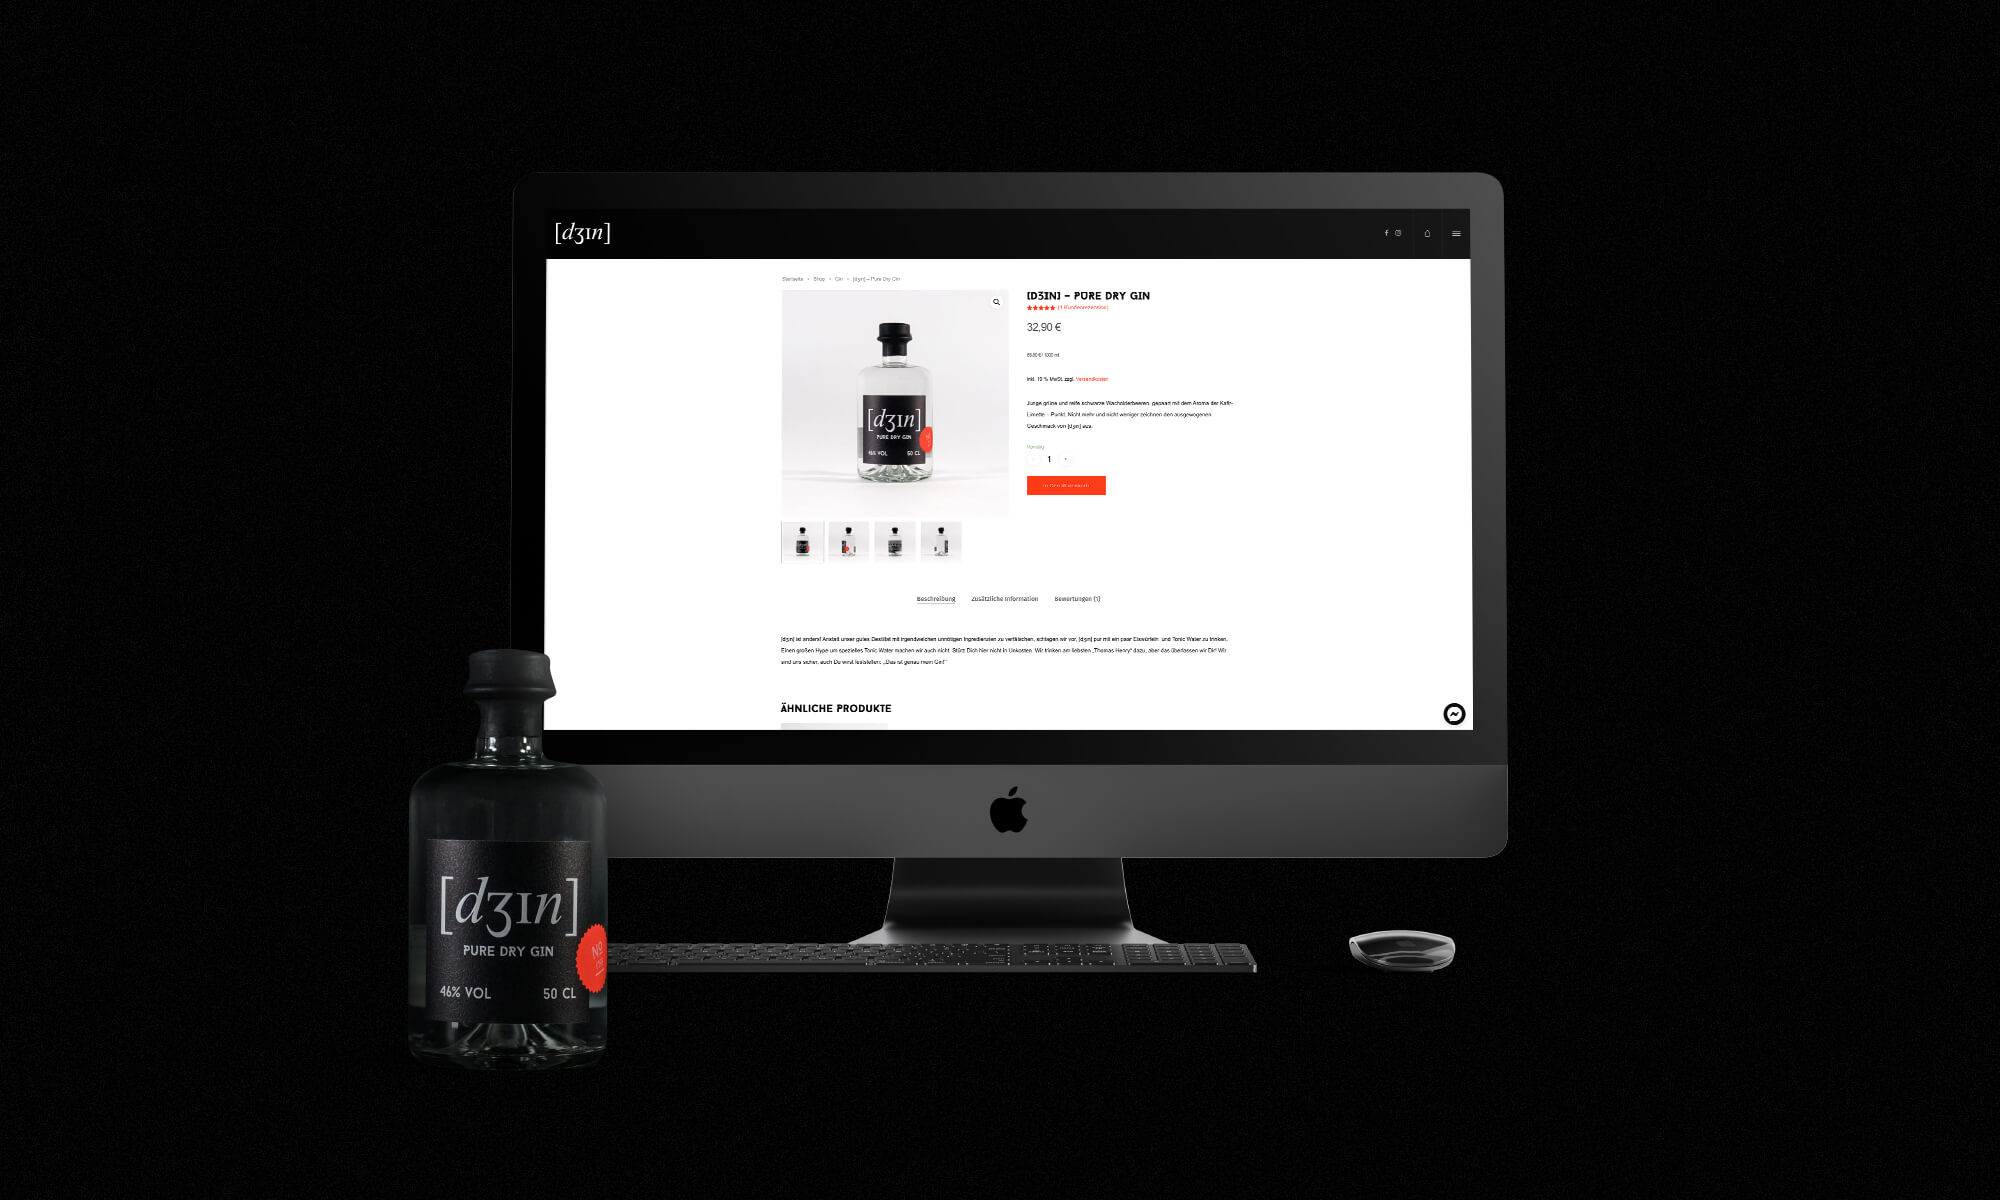 Schau und Horch Website Genau mein Gin - Corporate Identity für [dʒɪn]